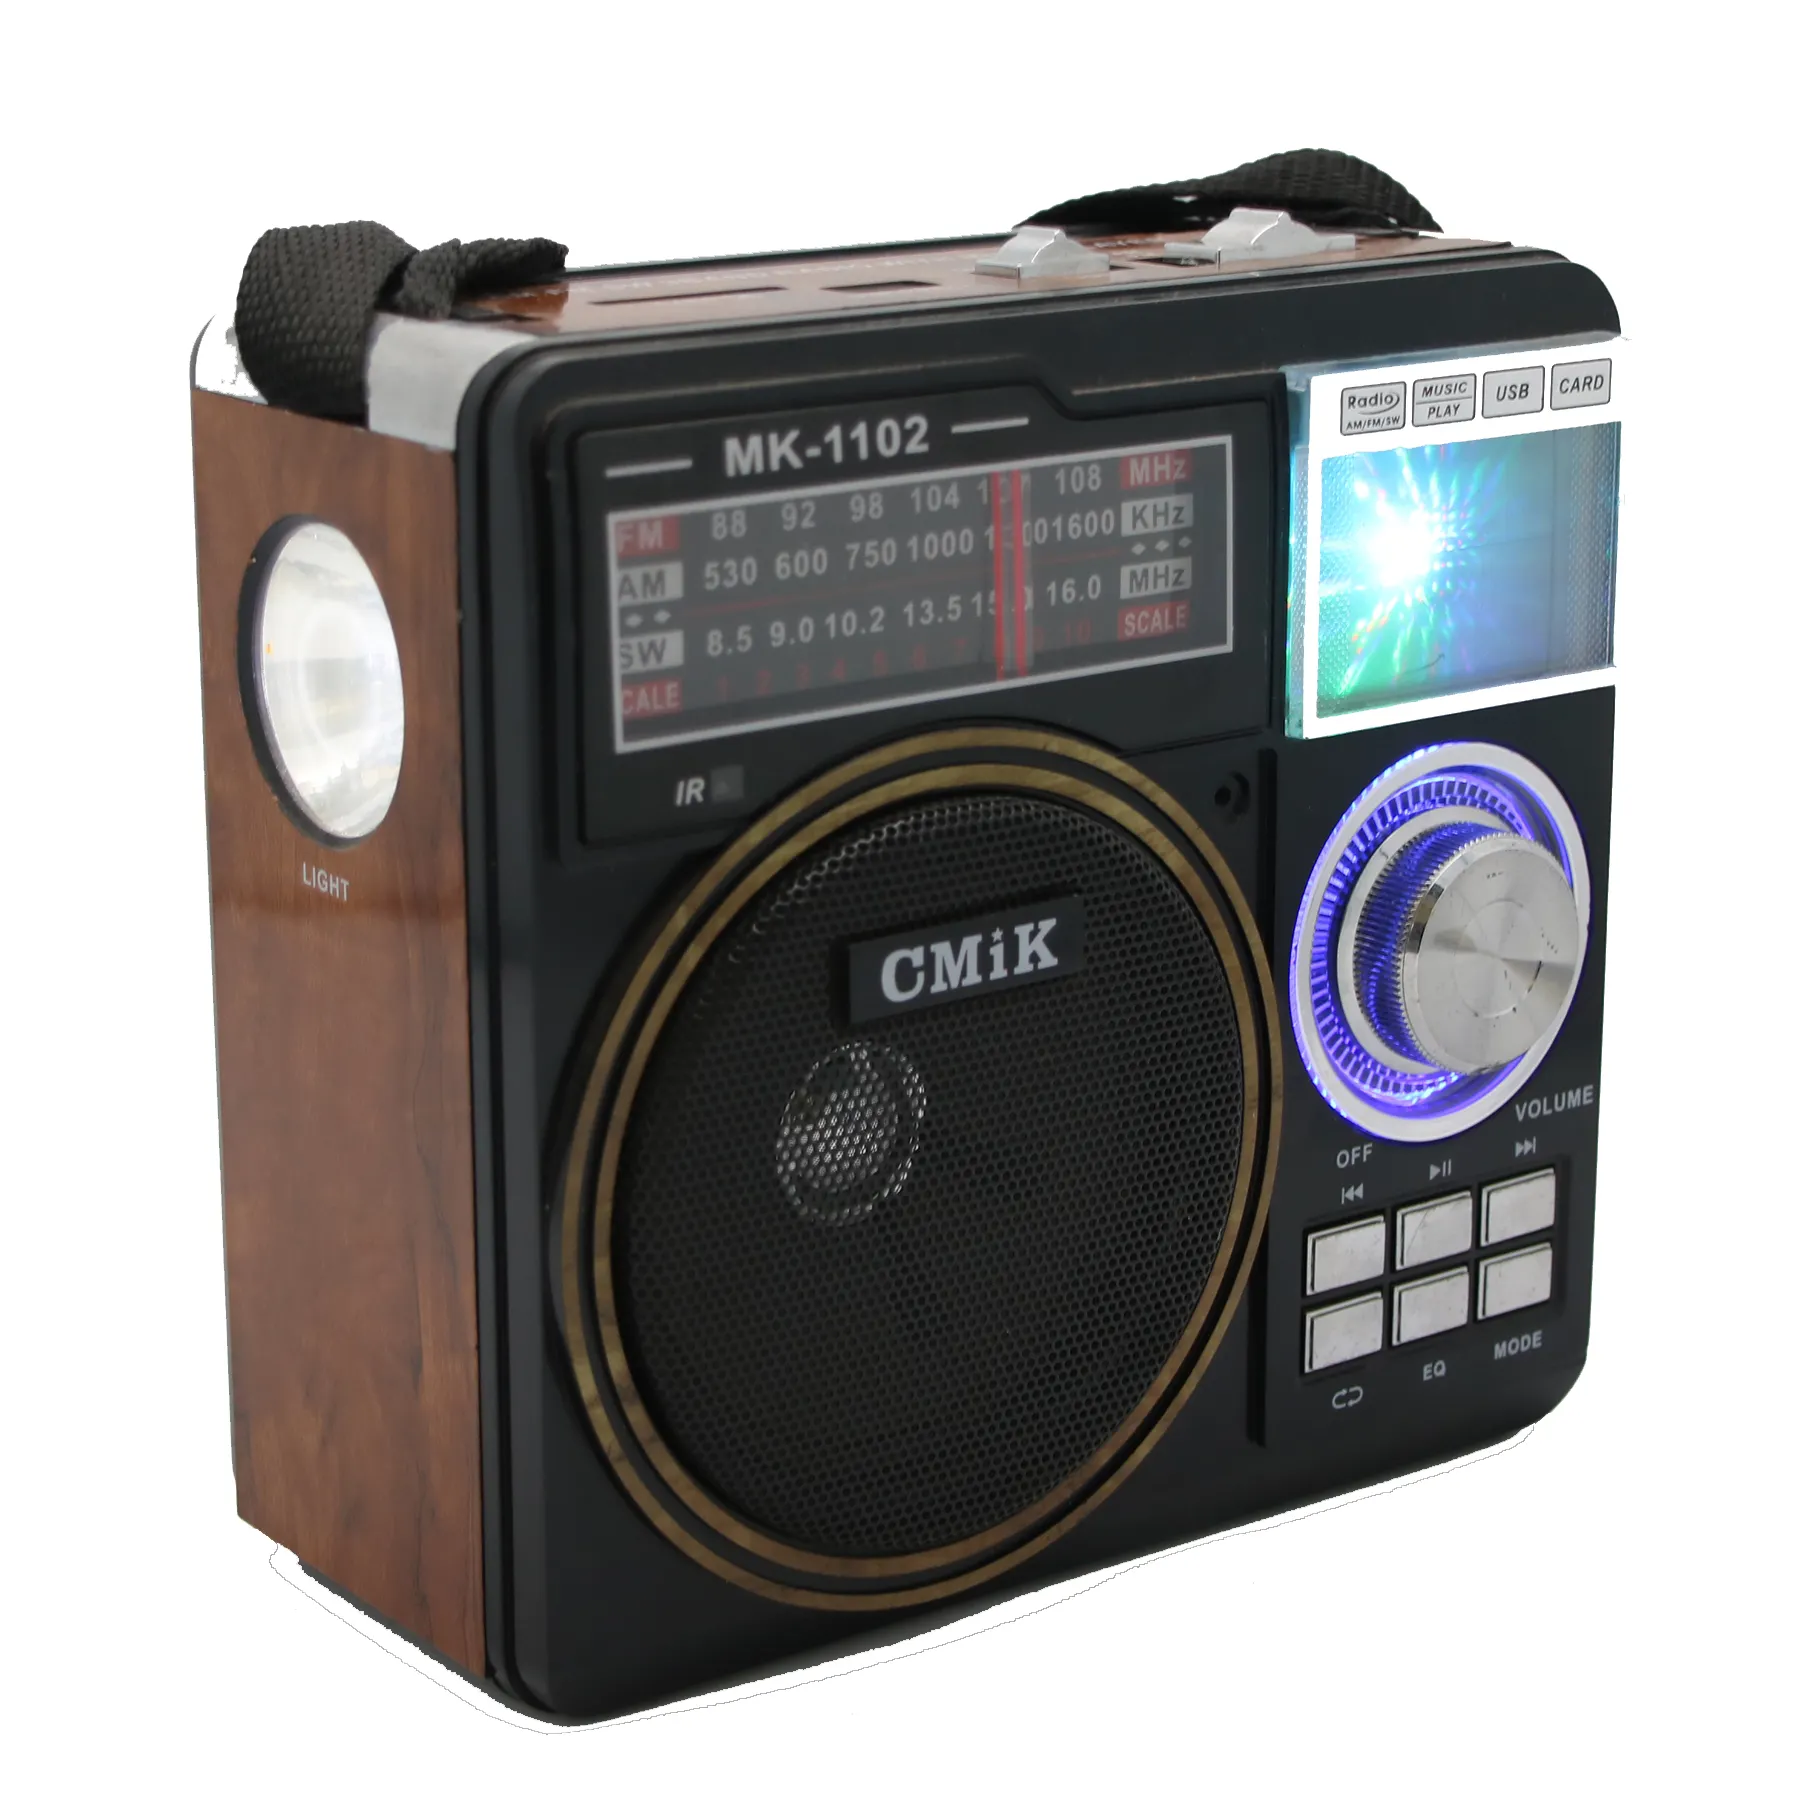 Cmik mk-1102 oem sıcak satış radyo fm eski model tv transistör şarj edilebilir pil AM/FM/SW 3 bantları mp3 taşınabilir radyo